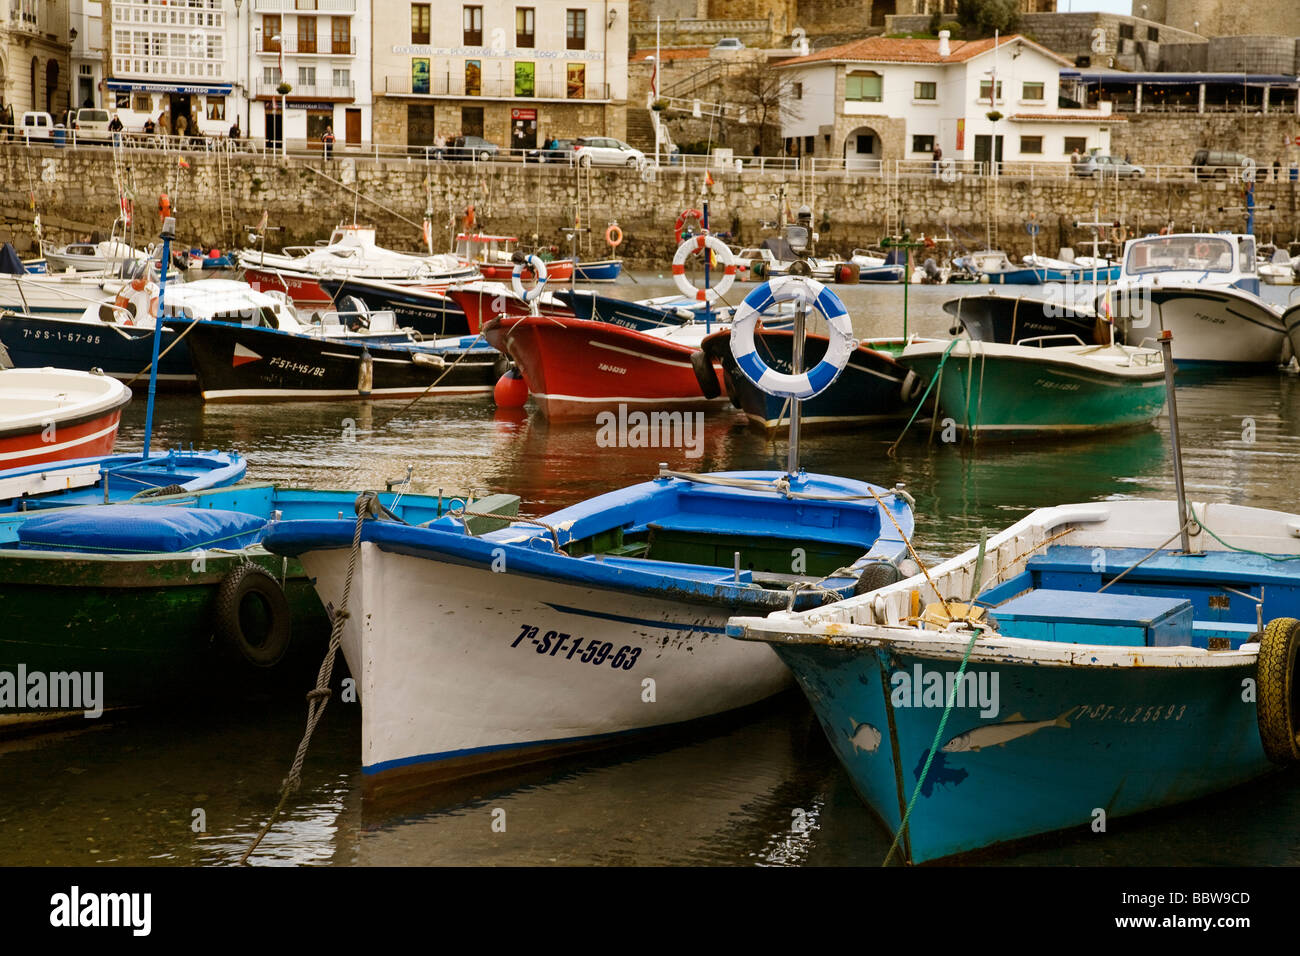 Barcas de Pesca Puerto Pesquero Iglesia de Santa María Castillo Castro Urdiales Cantabria España Fishing Boats Port Church Caste Stock Photo